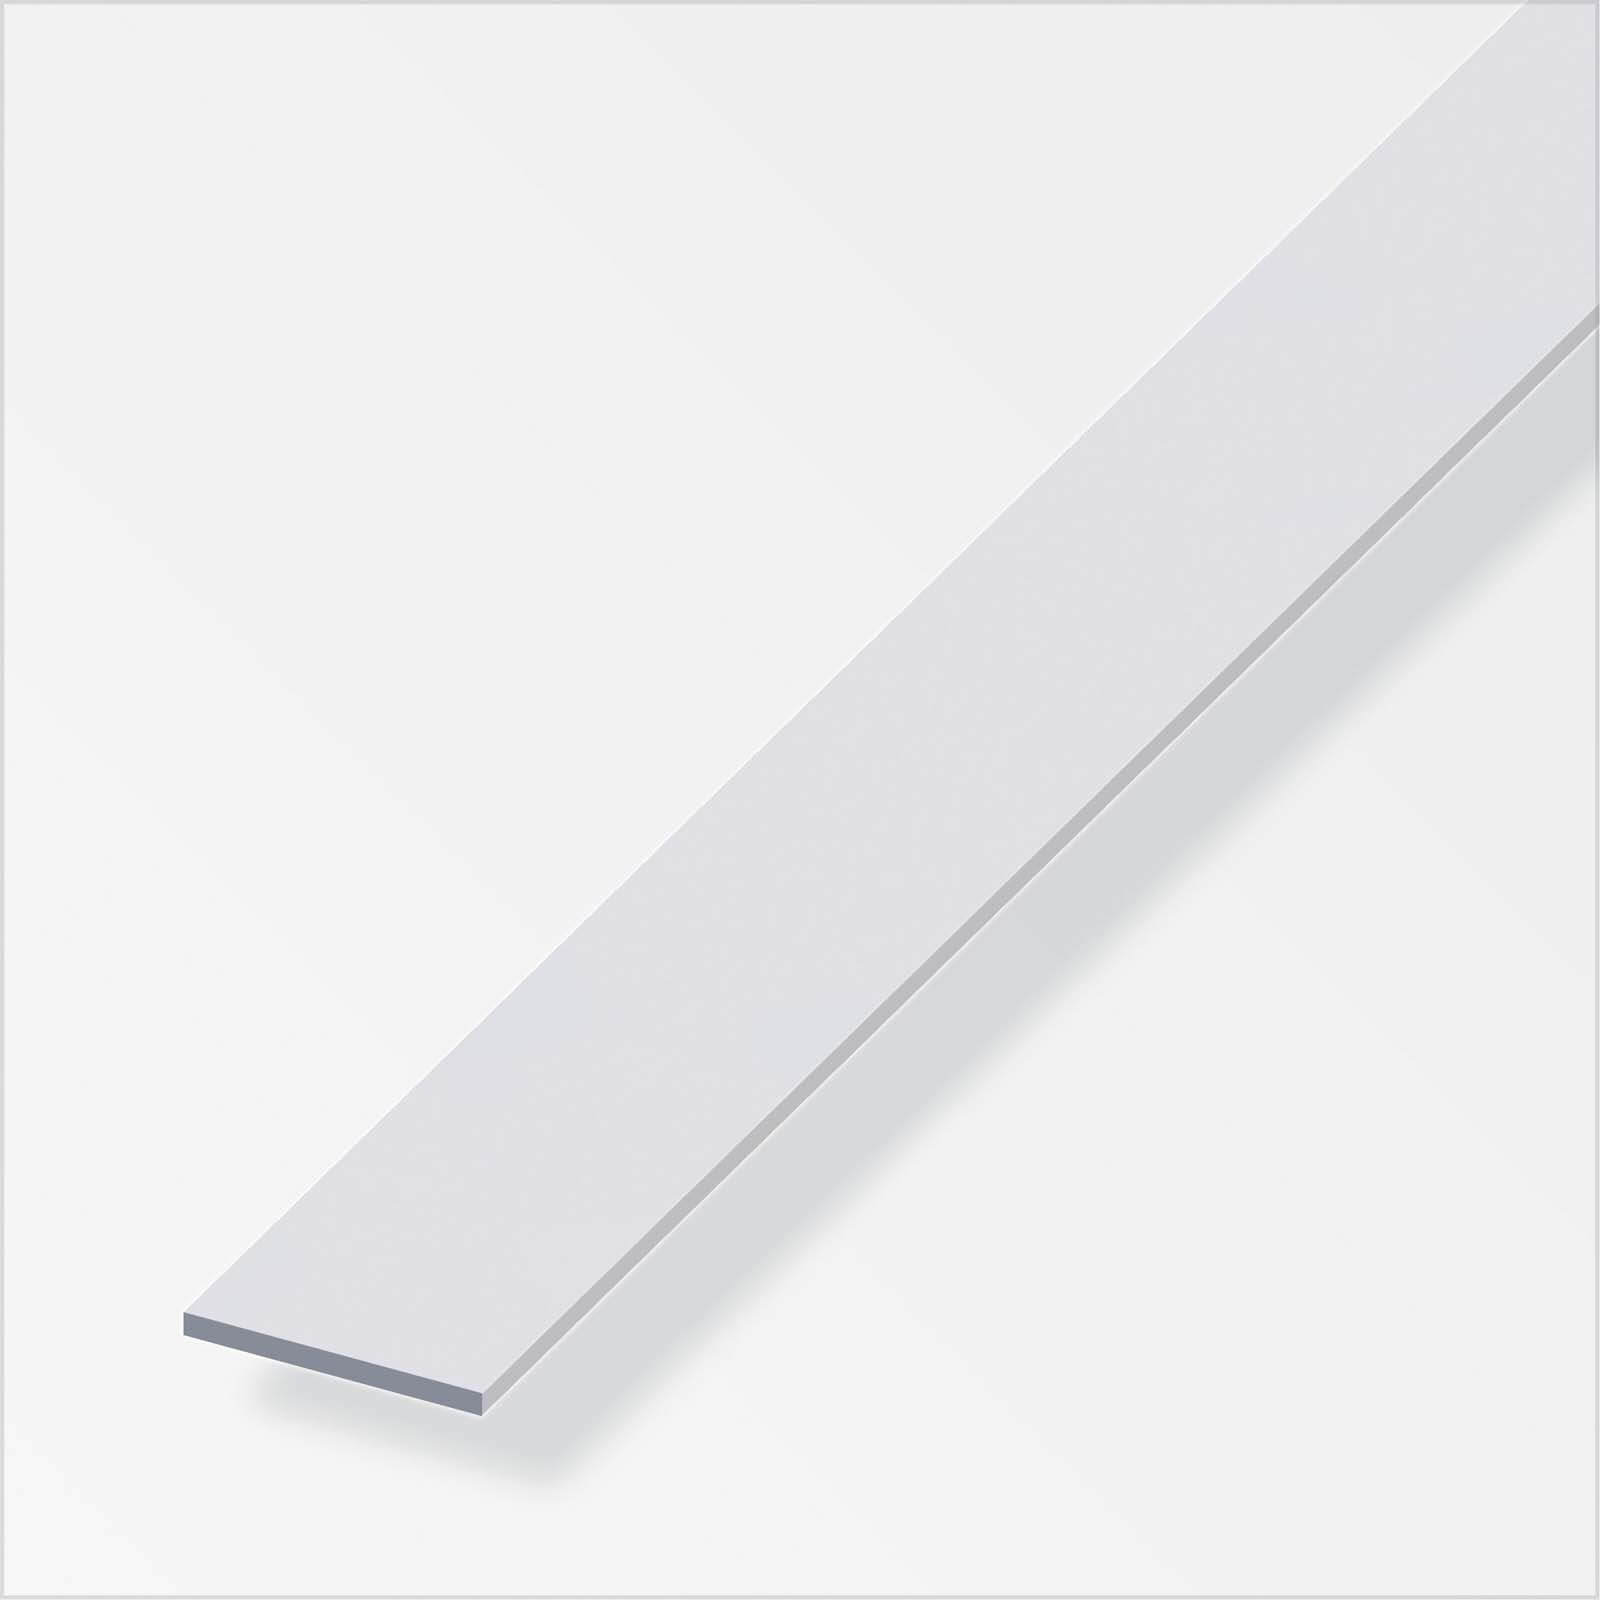 Anodised Aluminium Flat Bar Profile - 1m x 30mm